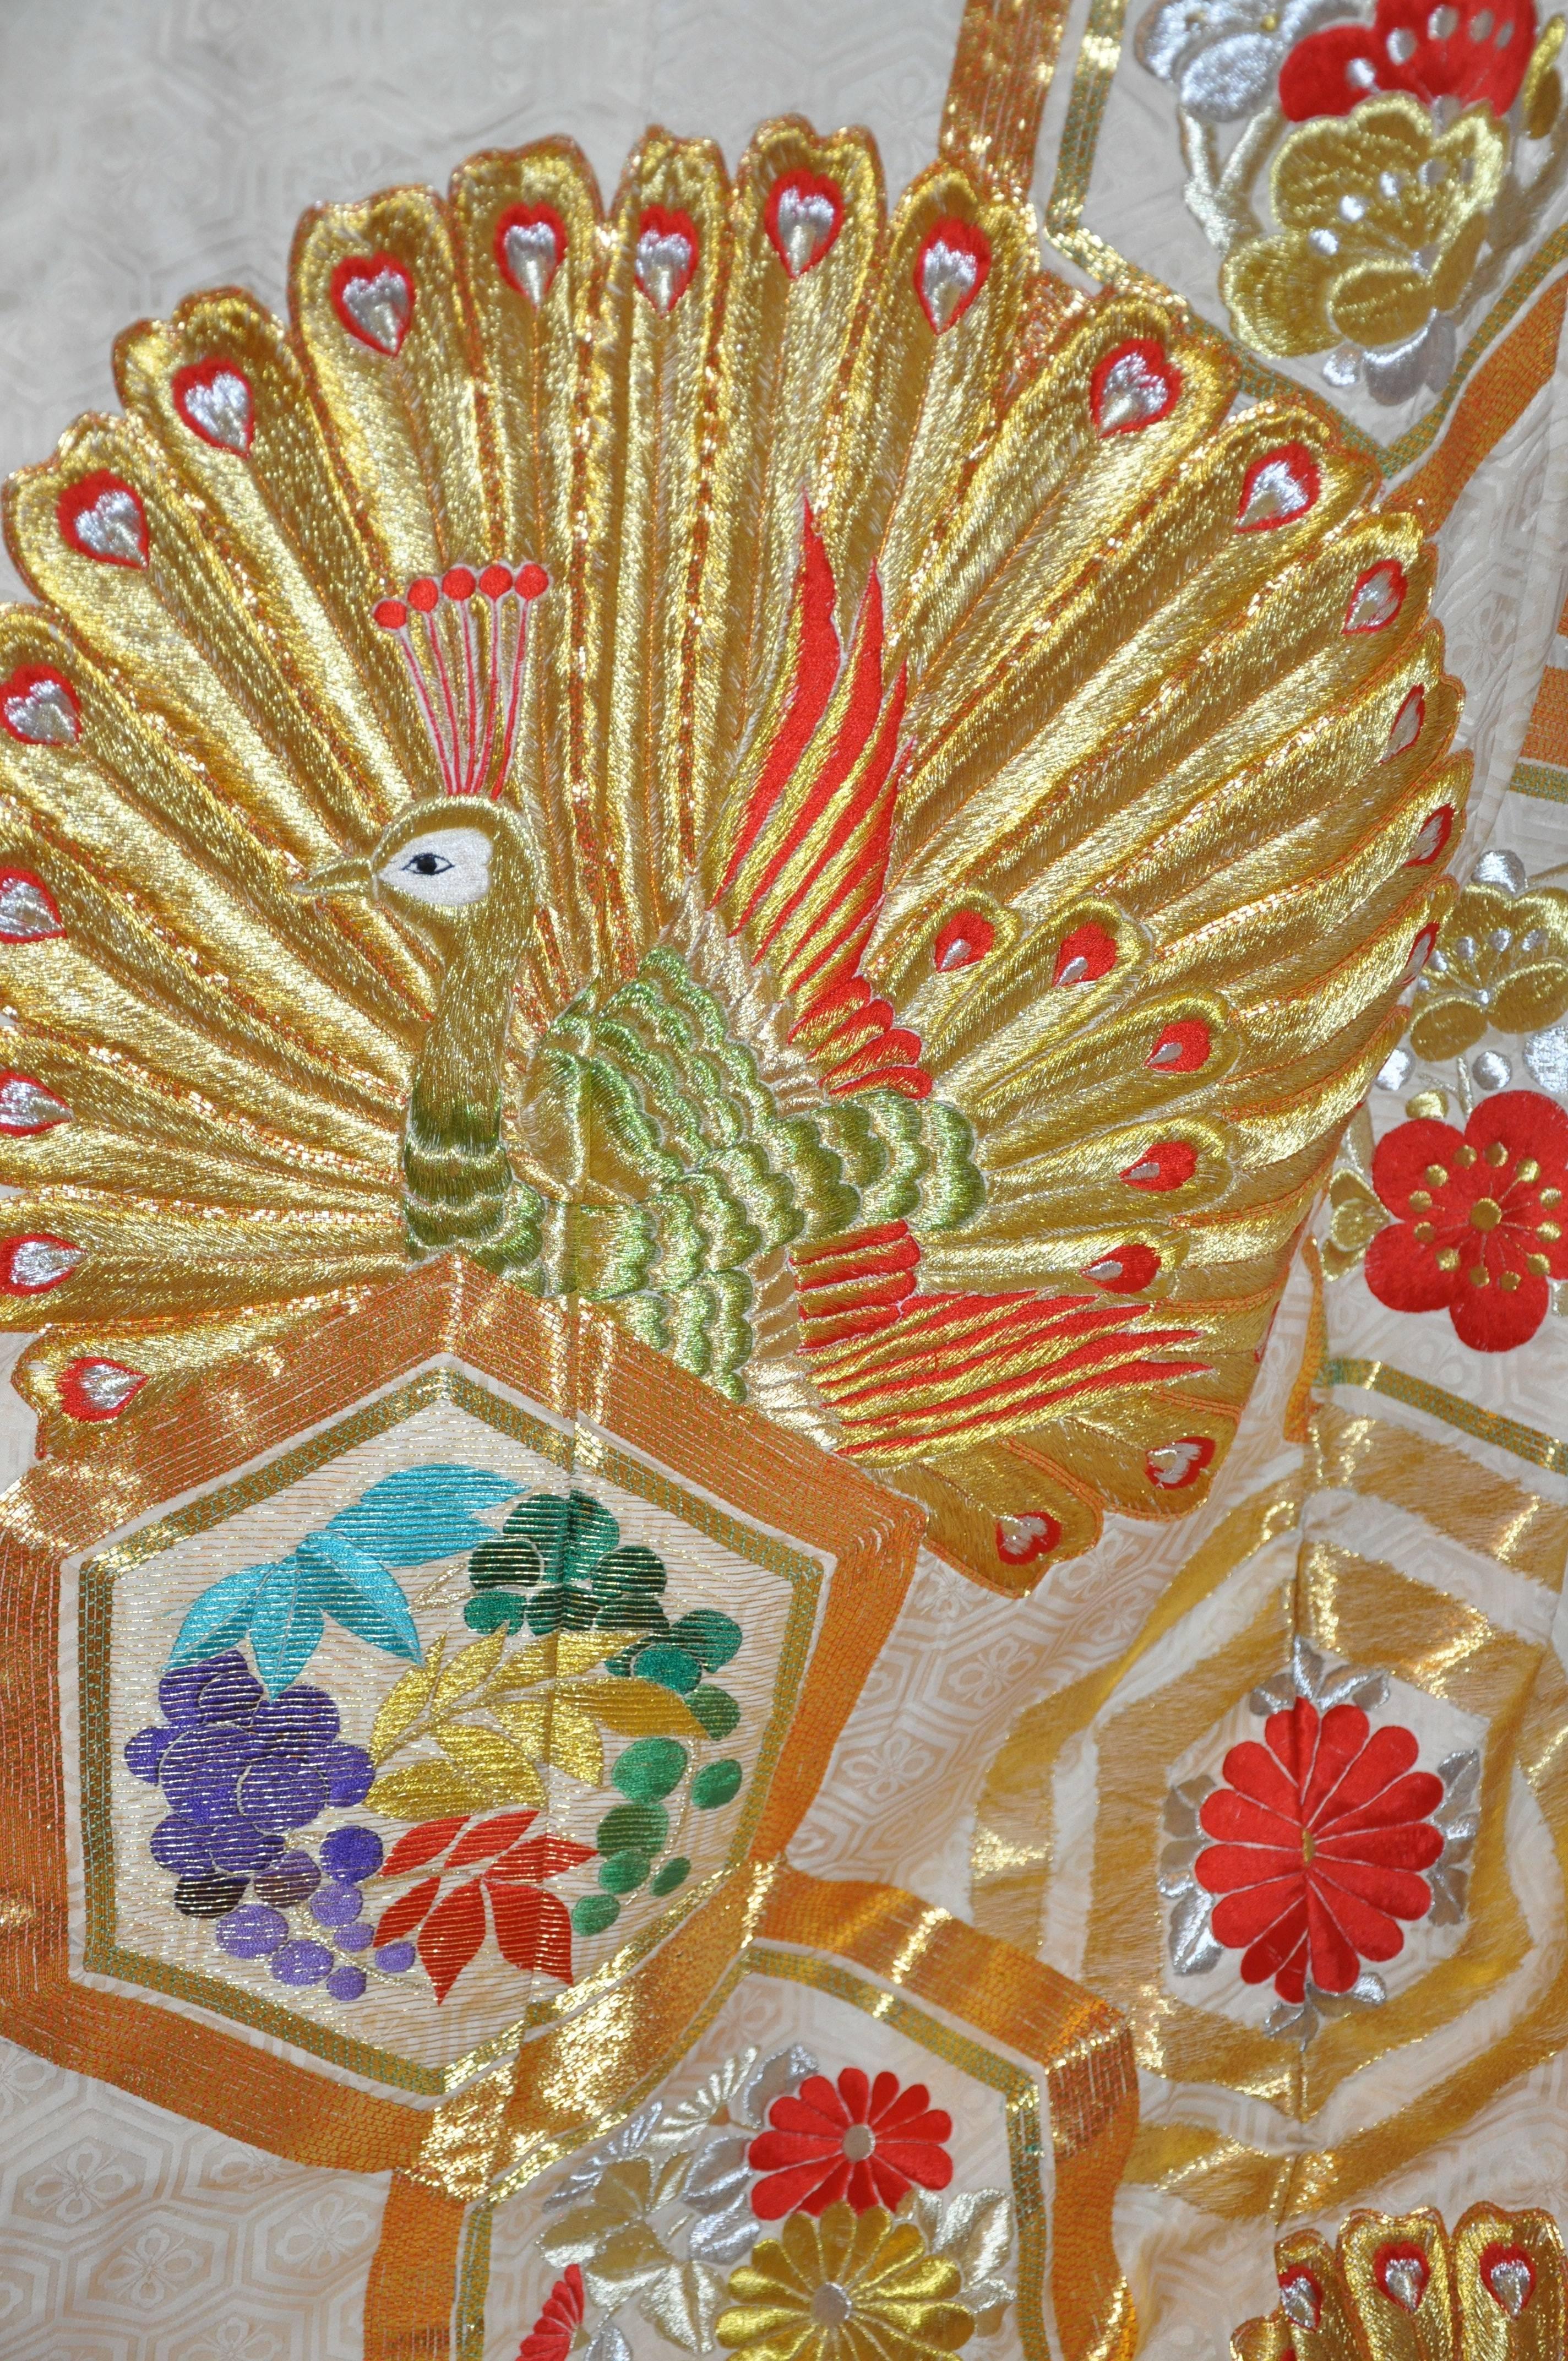       Wunderbar detailliert mit Pagode Fenster voll mit Multi-Farben von floralen Stickereien, sowie die vielen Aspekte der Multi-Farben sowie Gold und Schattierungen von Mandarine metallischen lame Thread innerhalb der Pfauen in voller Blüte